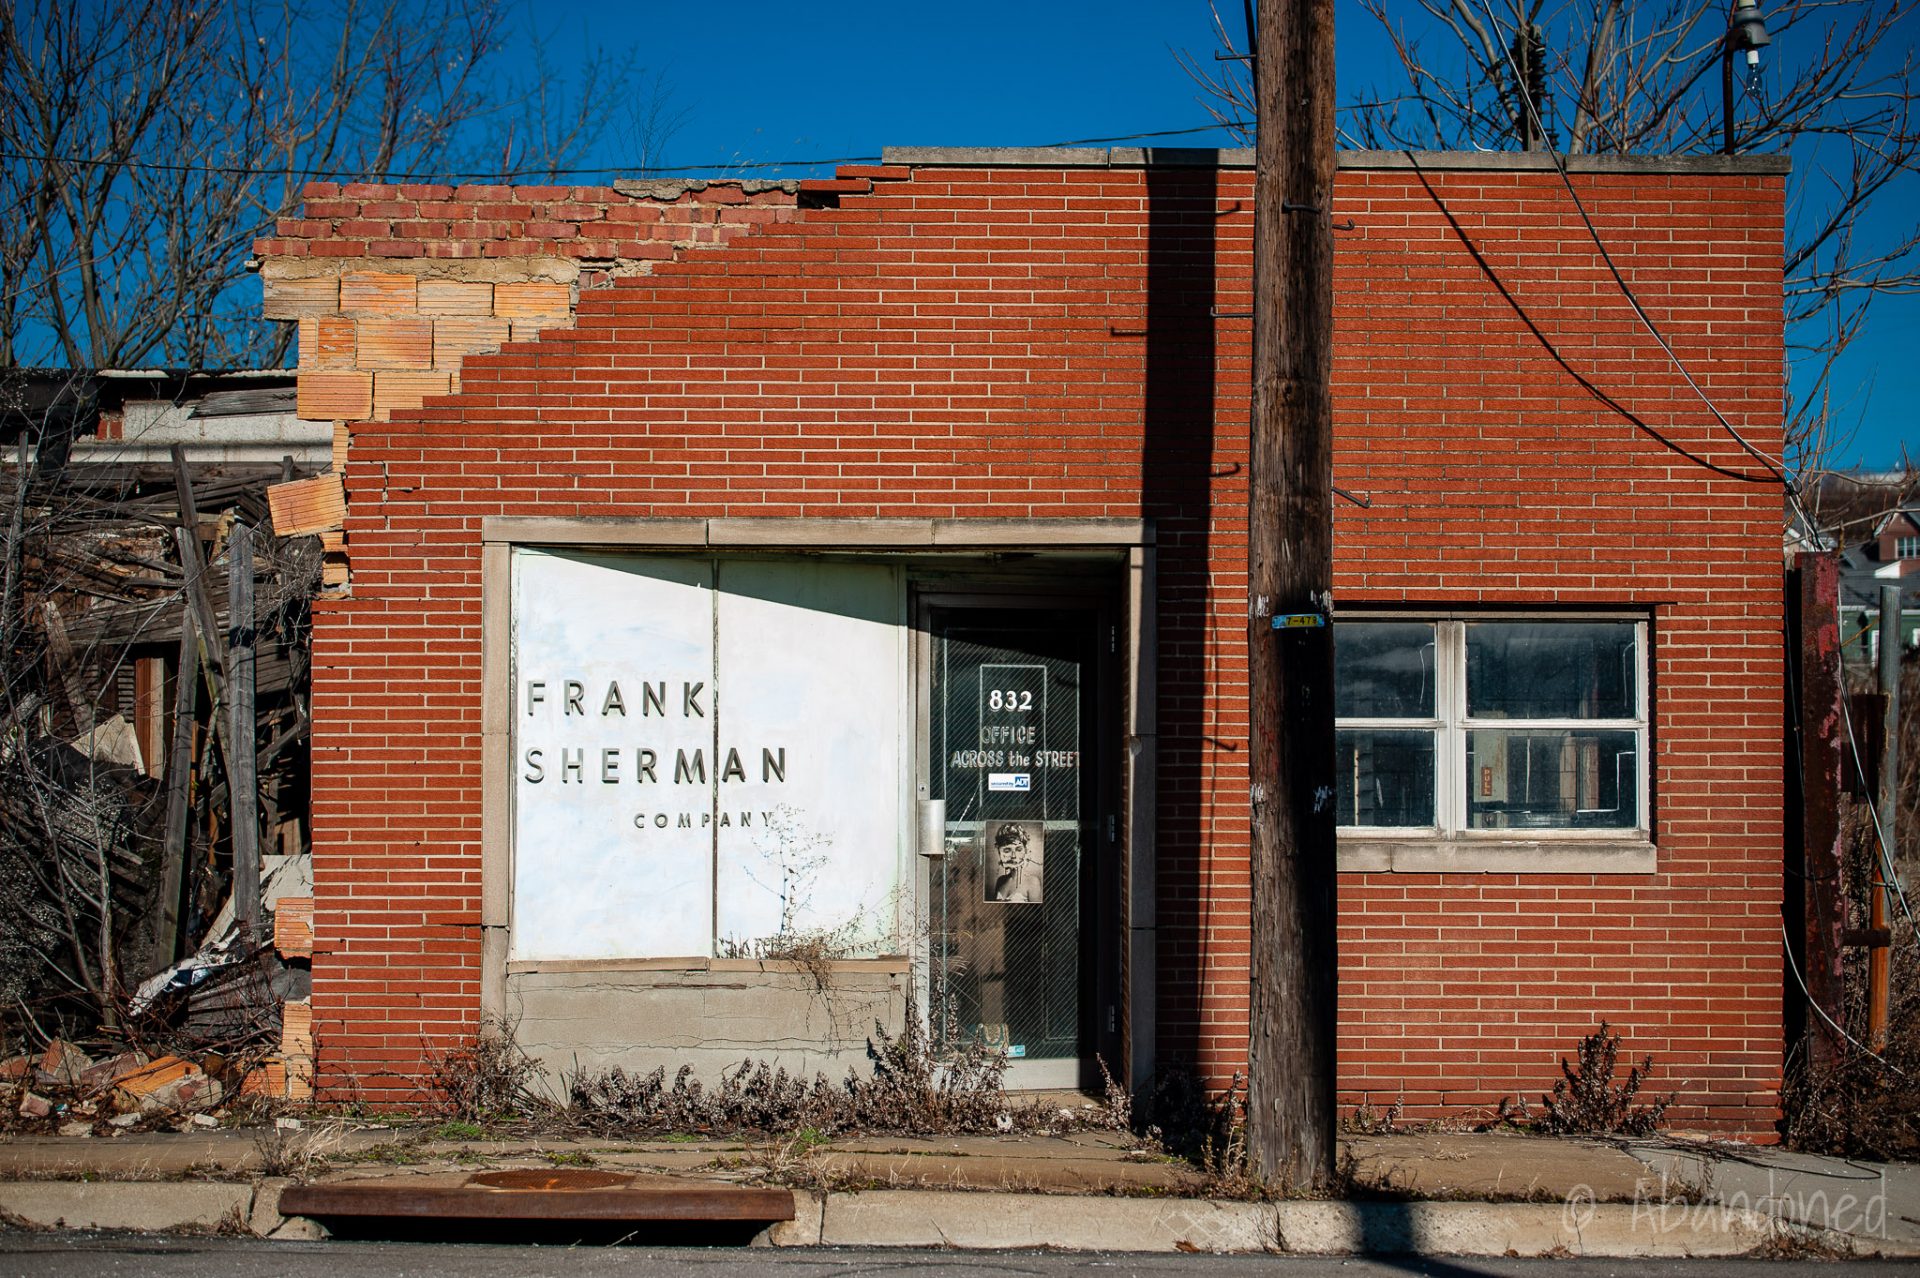 Frank Sherman Company